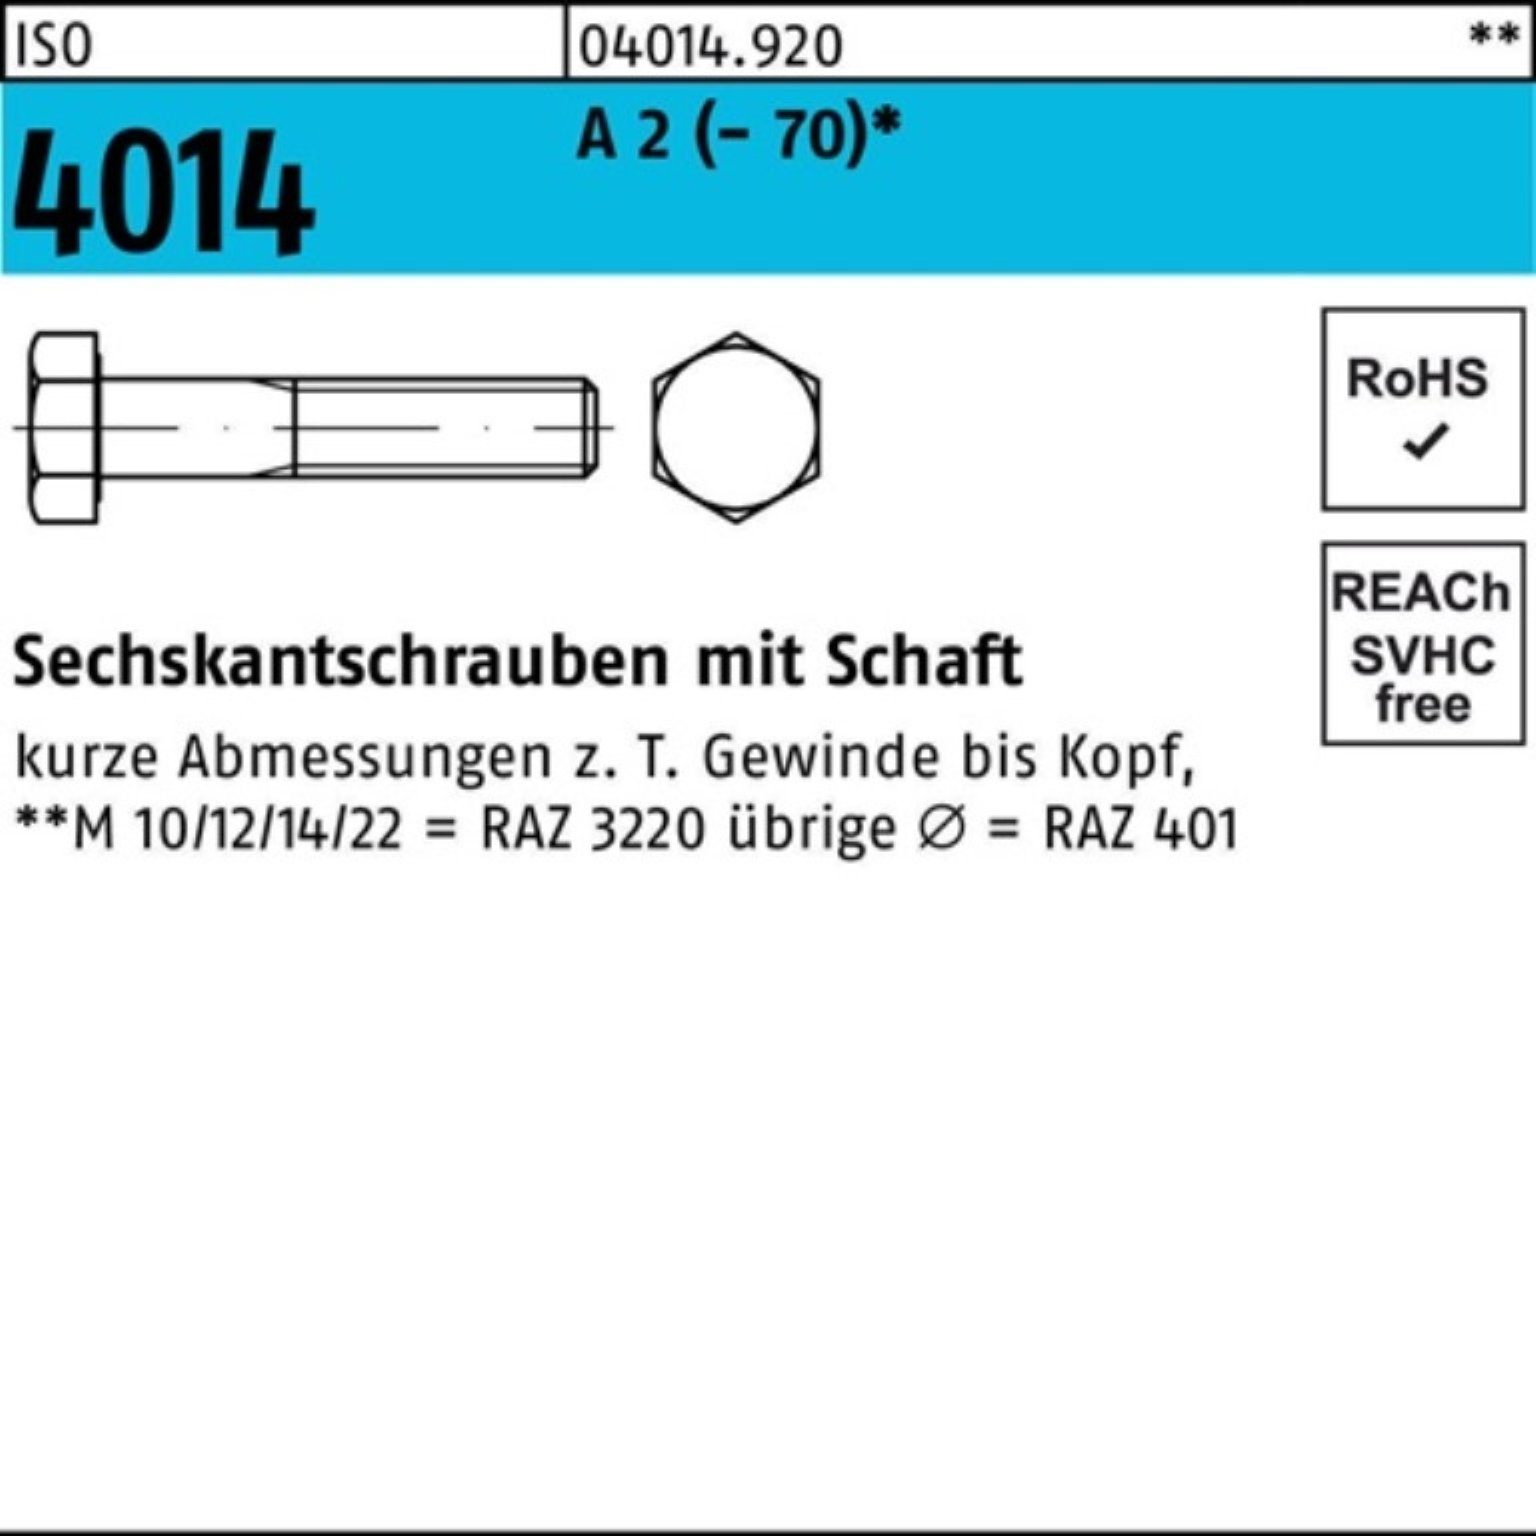 Sechskantschraube St Bufab A 100er 2 120 25 Schaft Pack Sechskantschraube M12x 4014 (70) ISO